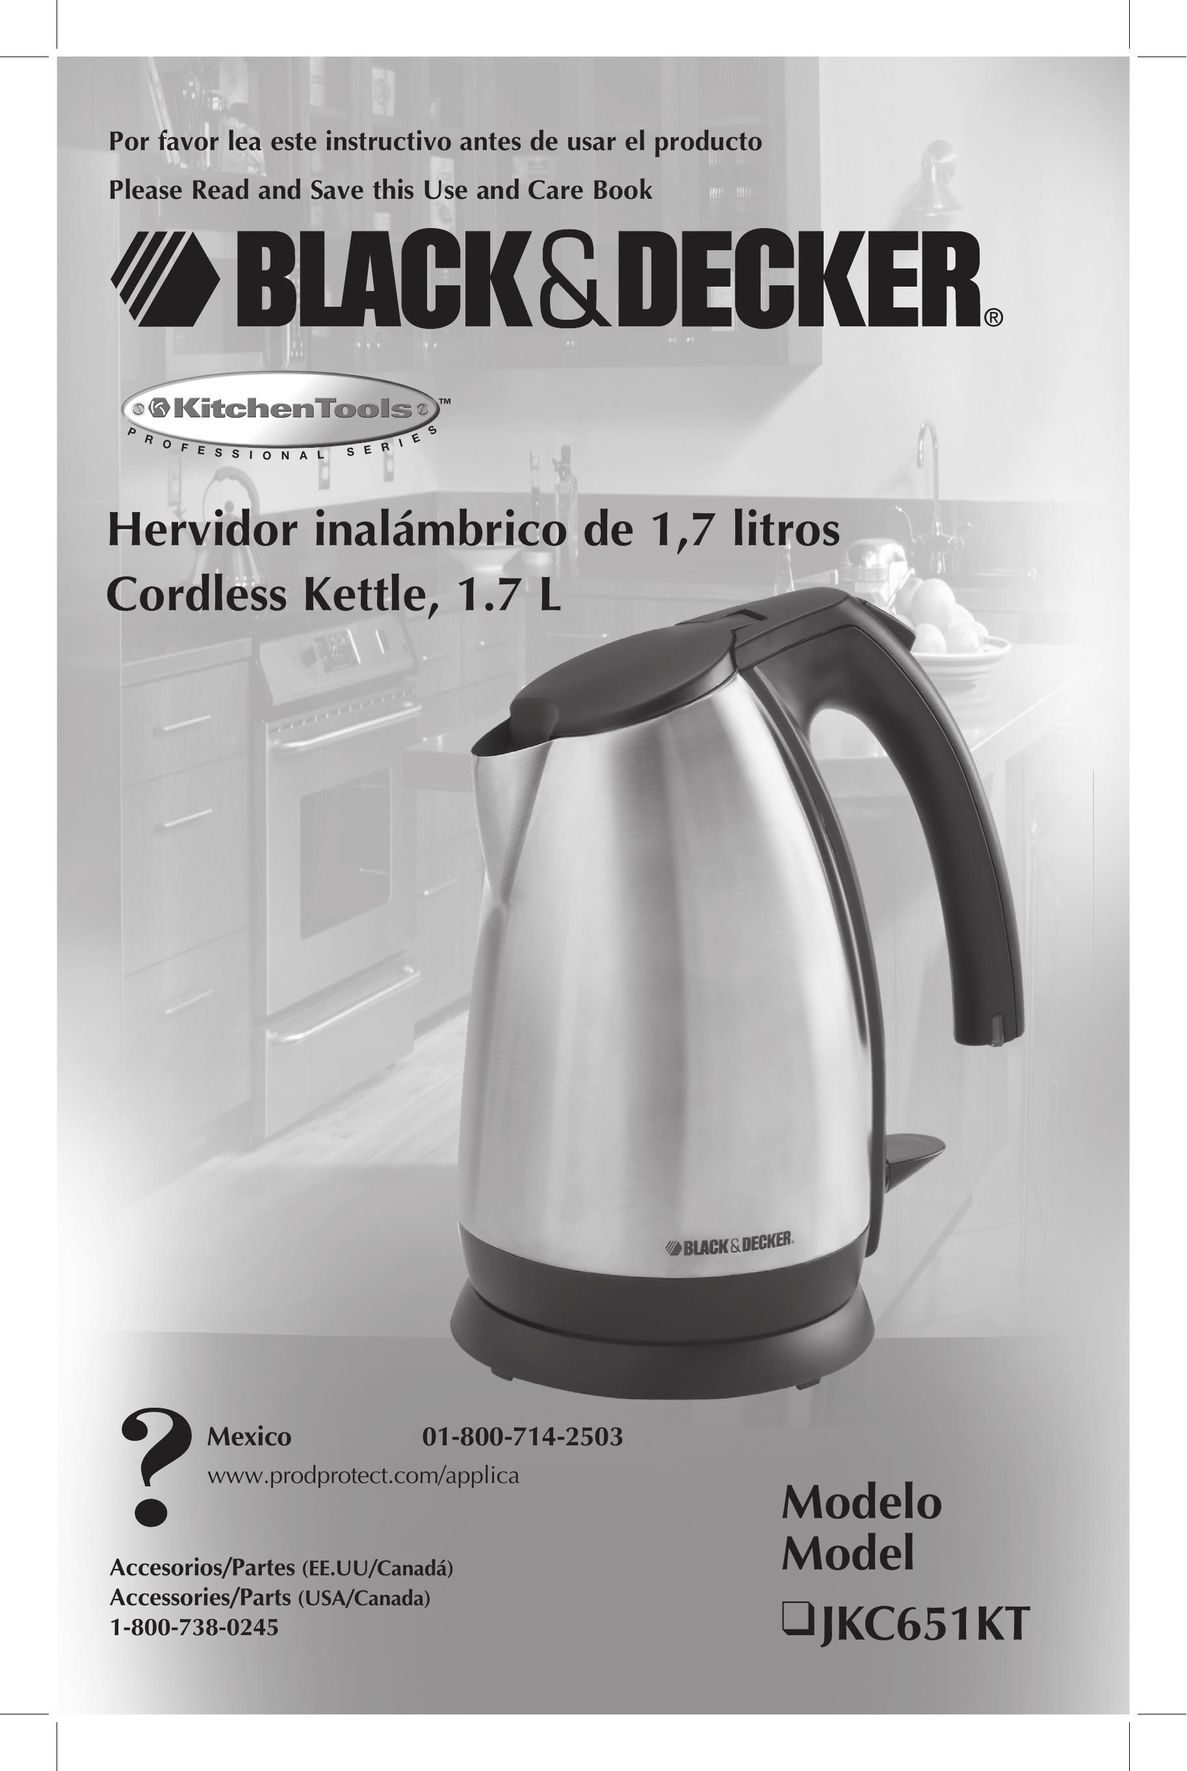 Black & Decker JKC651KT Hot Beverage Maker User Manual